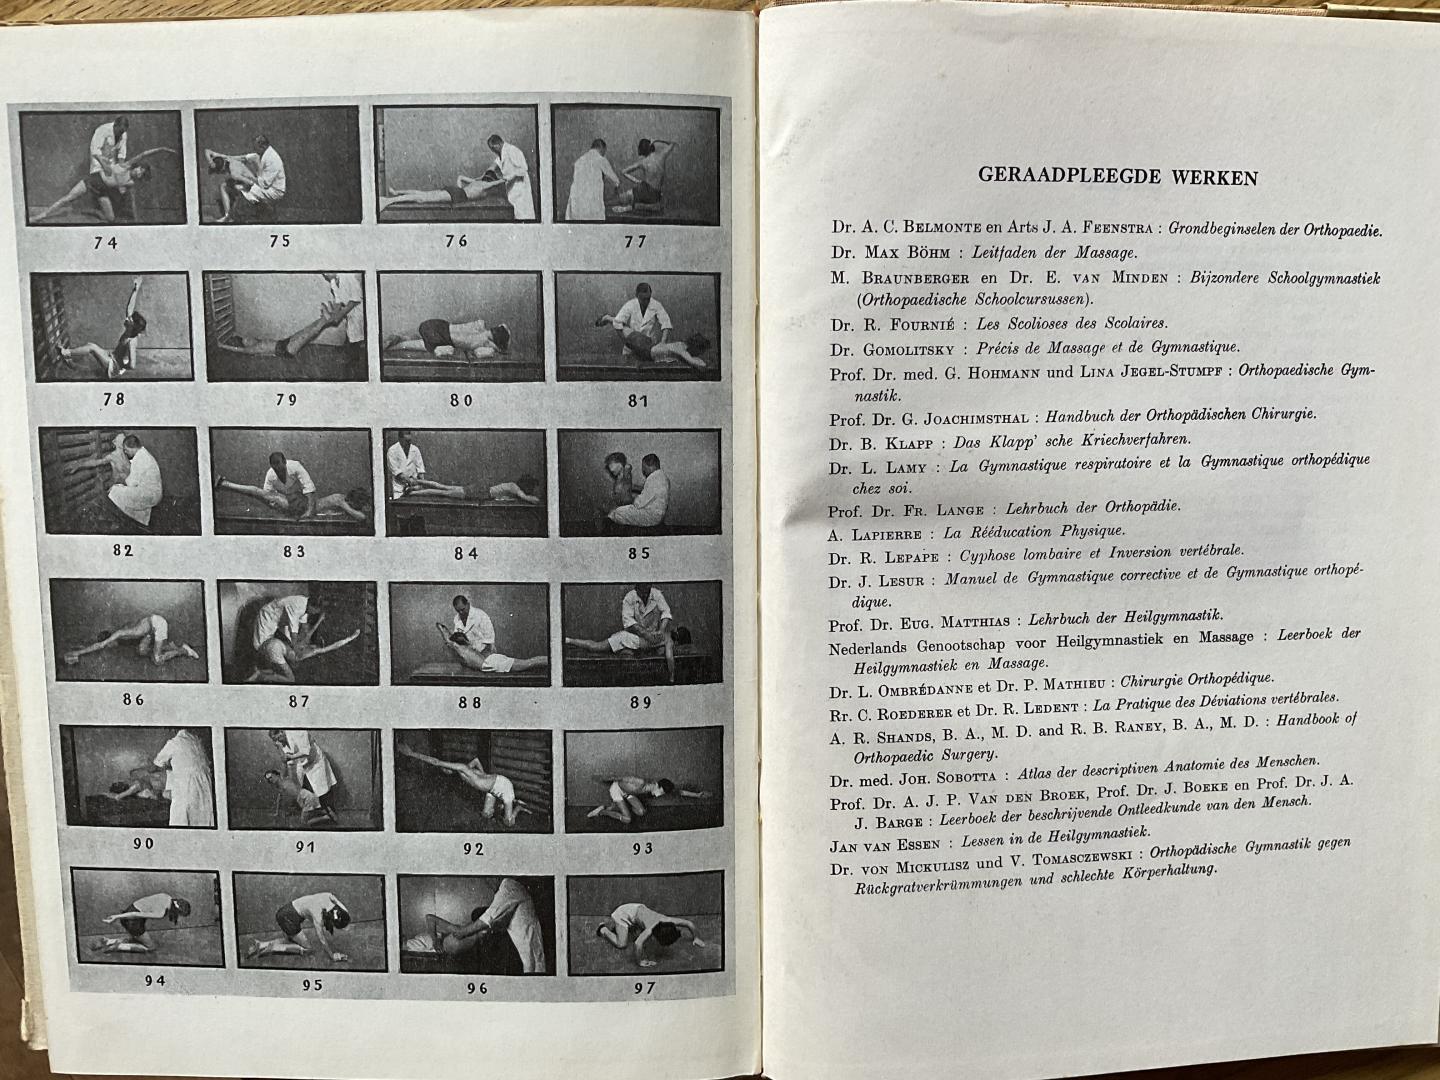 Liessens, P., Kempeneers, F. - Orthopedische gymnastiek voor wervelkolomafwijkingen (2e druk)